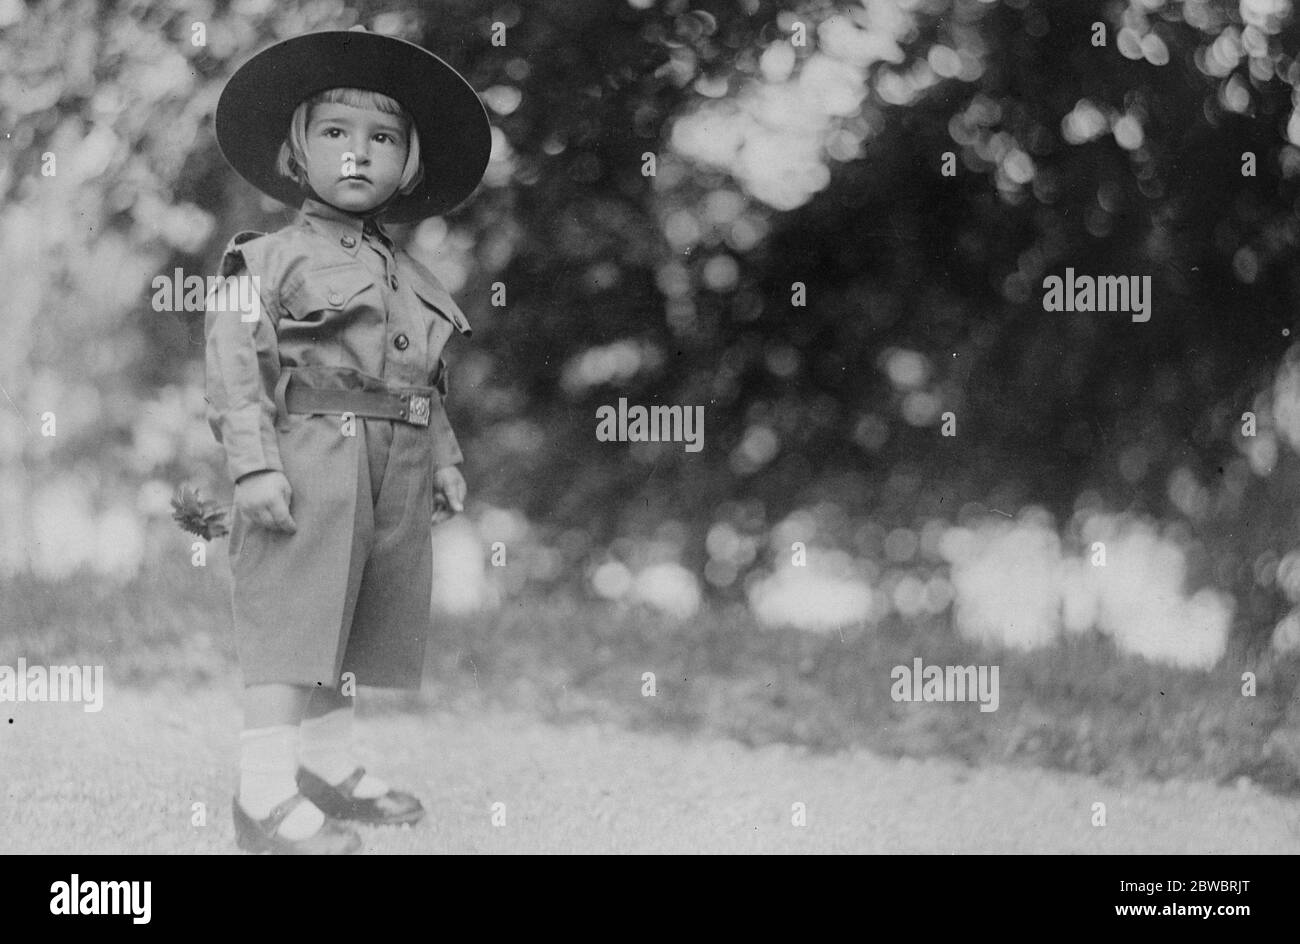 Nouvelle photographie du jeune prince héritier de Yougoslavie le prince héritier de Yougoslavie , qui a récemment célébré son troisième anniversaire , en uniforme d'un scout 17 octobre 1925 Banque D'Images